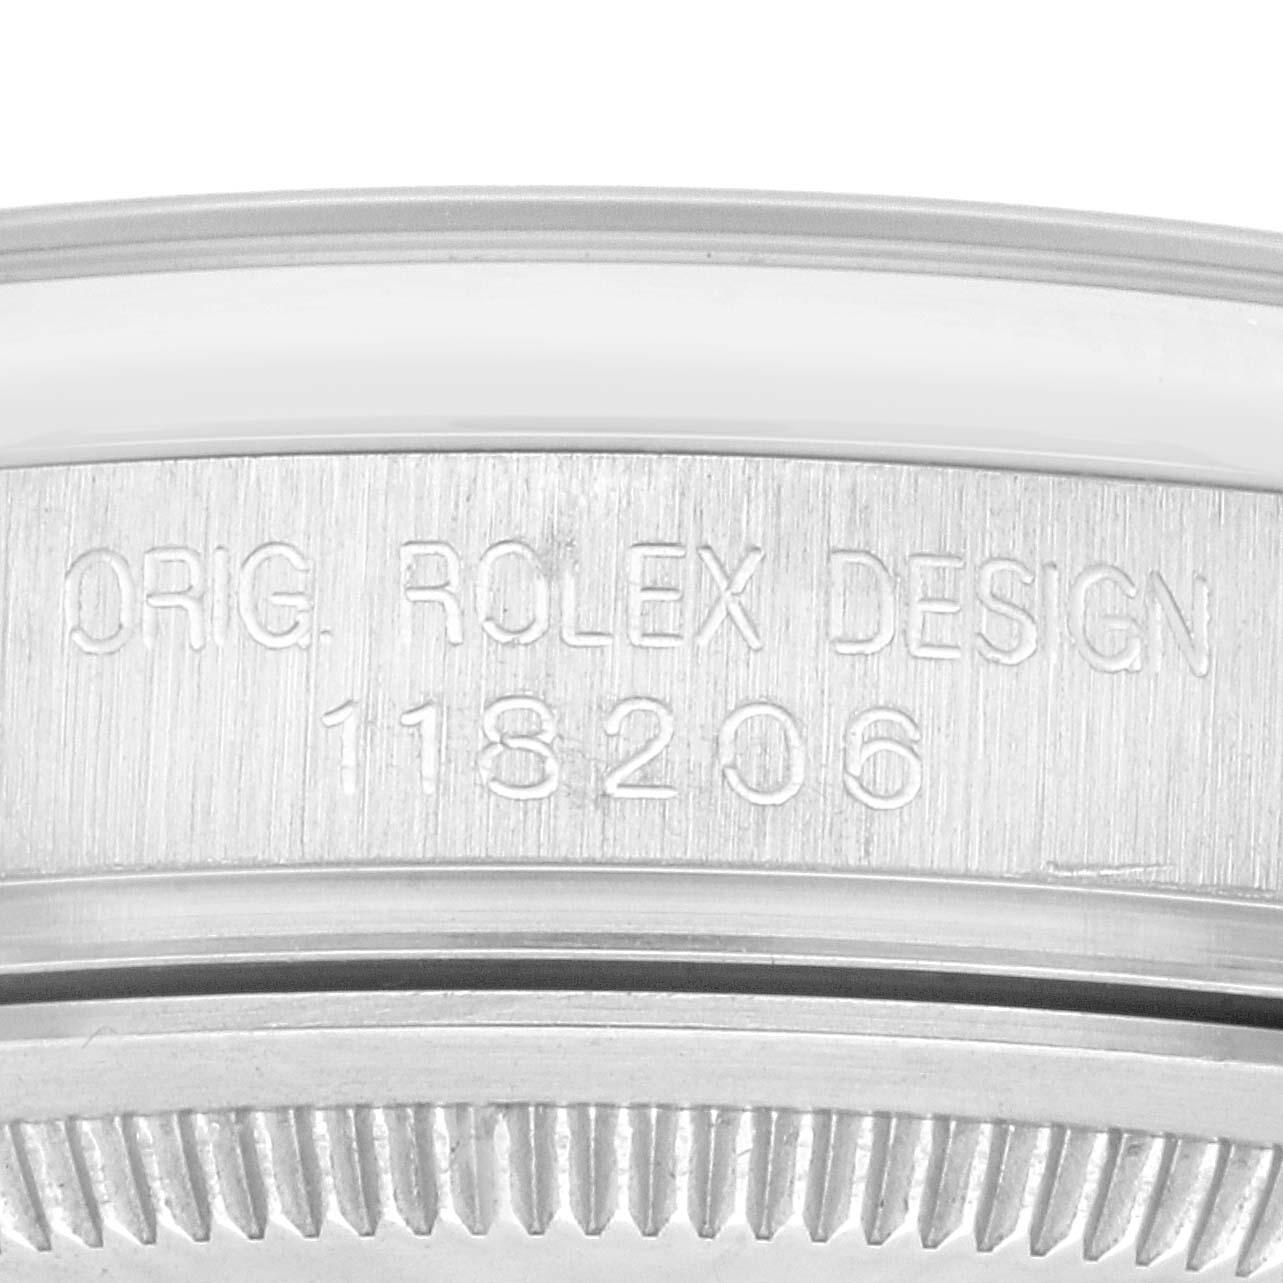 Rolex Day-Date President Diamond Dial Platinum Mens Watch 118206 Box Papers. Mouvement automatique à remontage automatique, officiellement certifié chronomètre, avec fonction de date rapide. Boîtier oyster en platine de 36.0 mm de diamètre. Logo